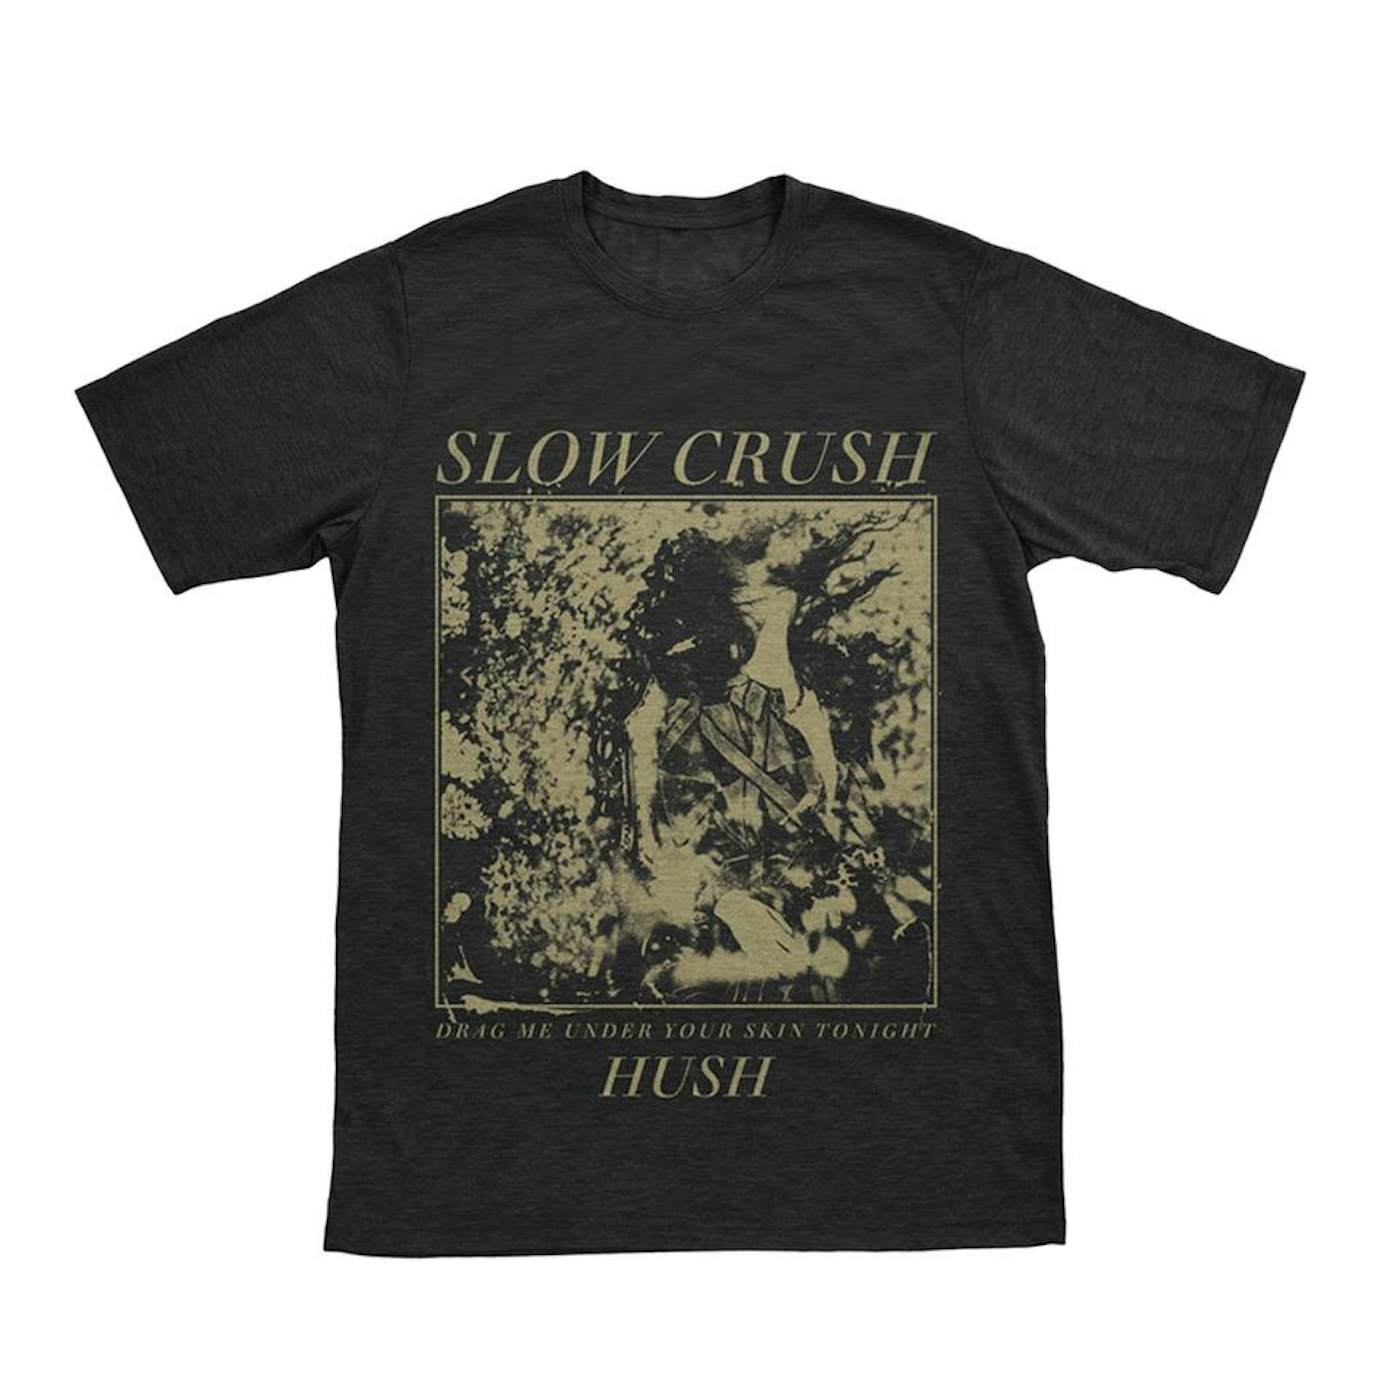 Slow Crush - "Hush" Shirt